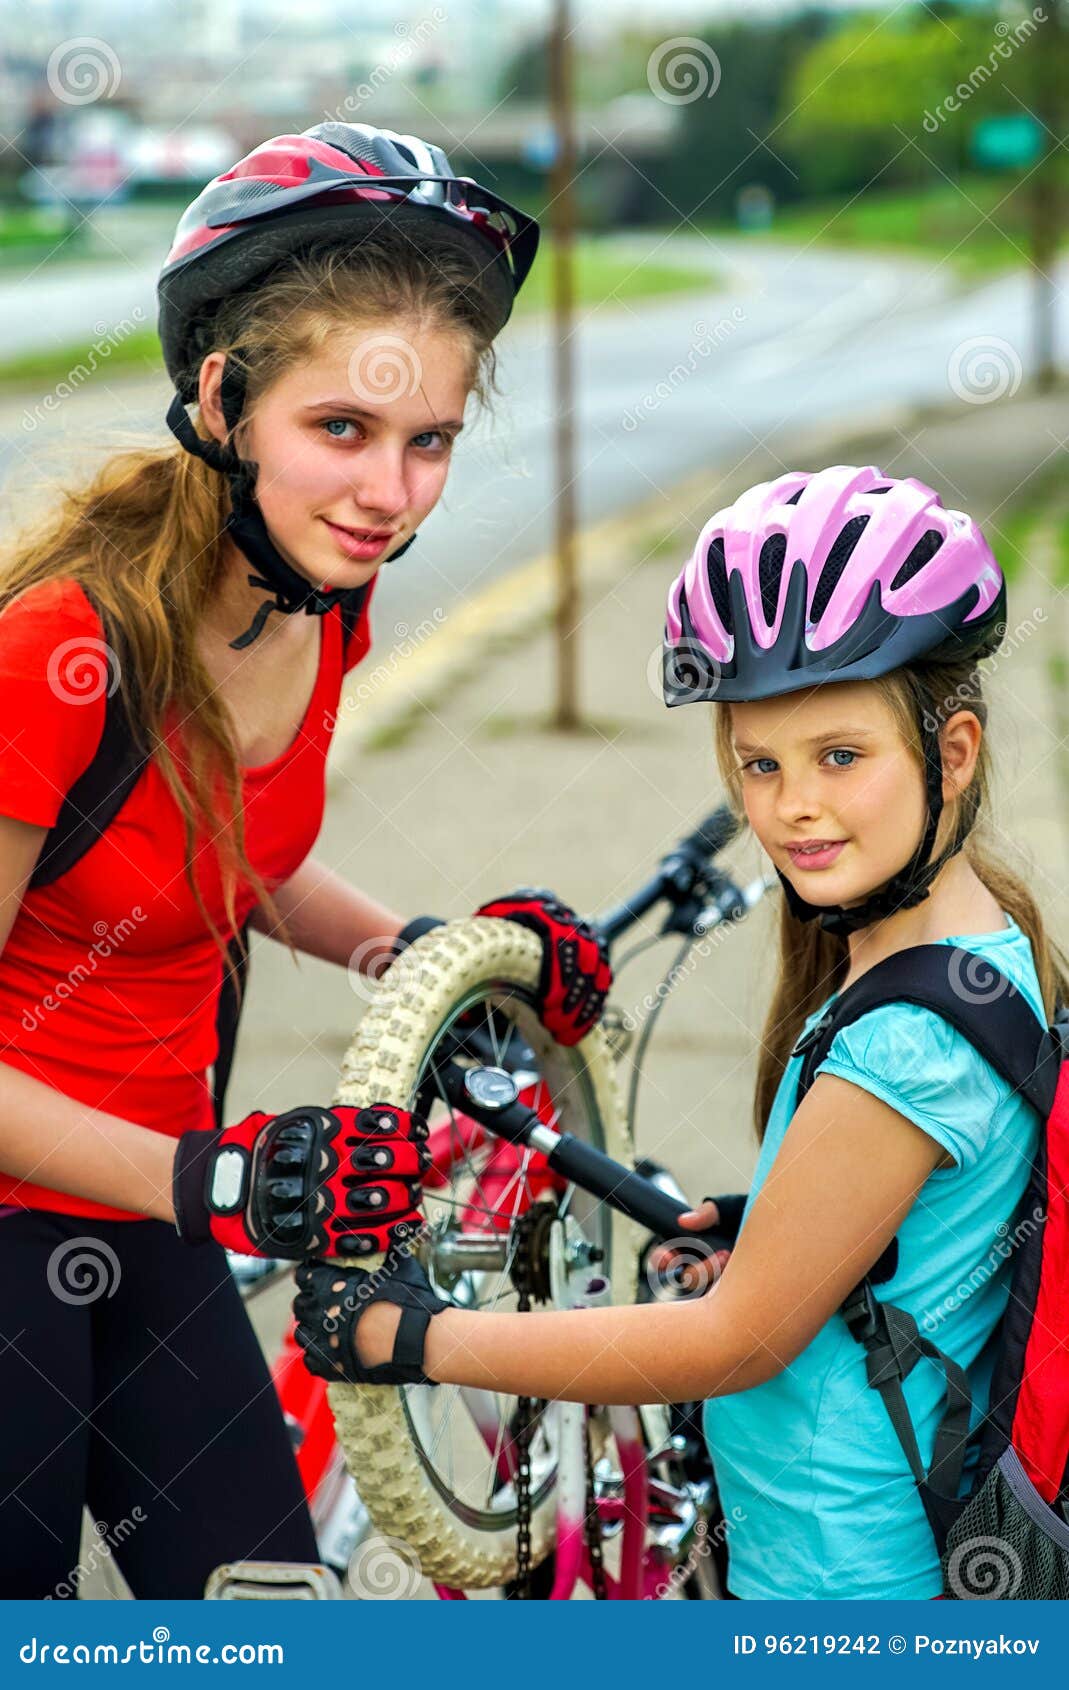 kids cycle pump